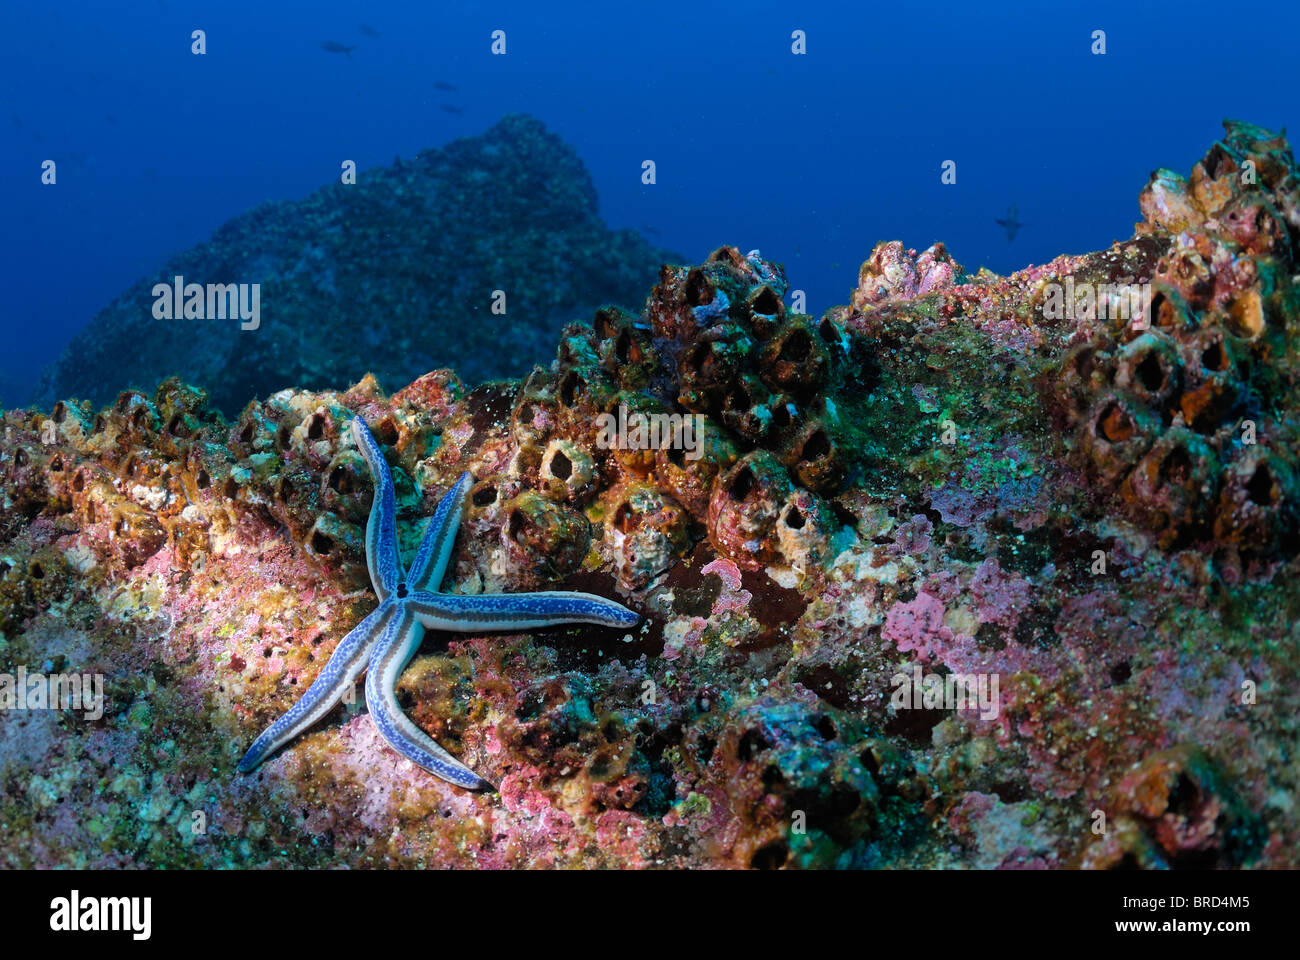 Vue sous-marine de bleu de mer sur rock (phataria unifascialis), l'Équateur, l'archipel des Galapagos, l'île d'Espanola, l'Océan Pacifique Banque D'Images